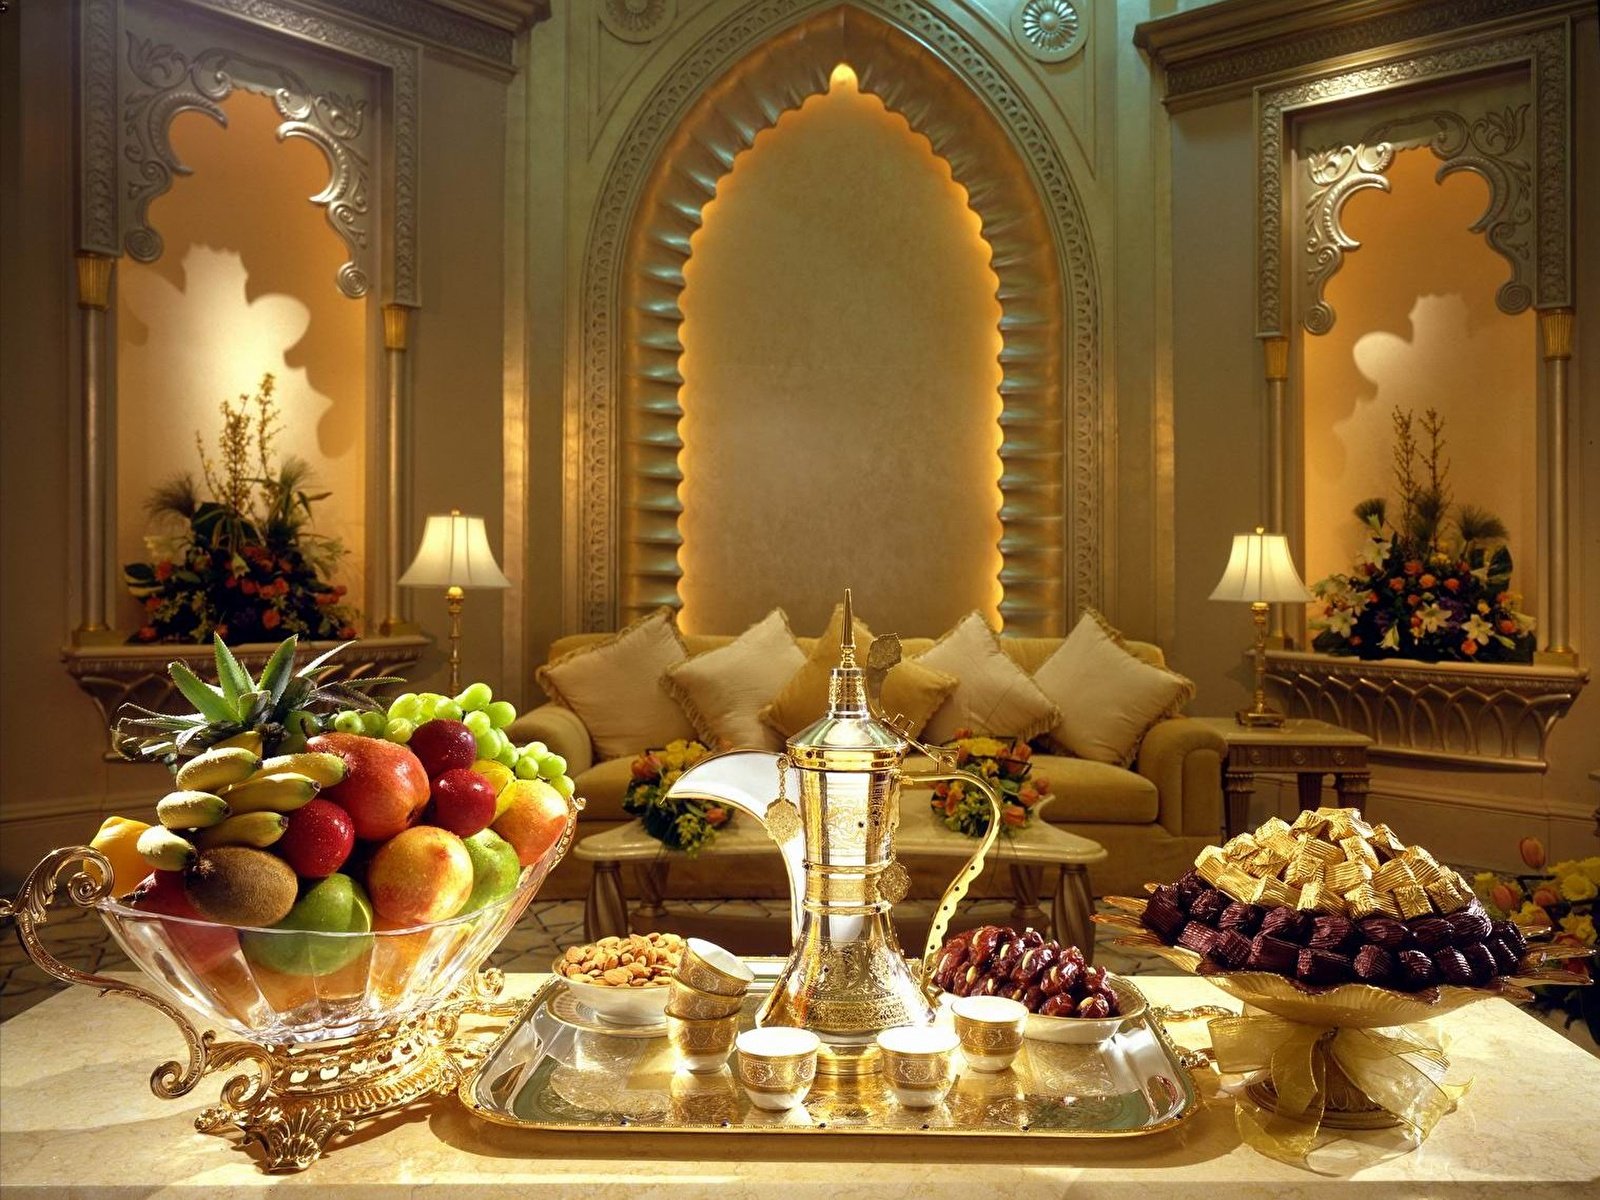 Будь спокоен на арабском. Вечер в арабском стиле. Шикарный стол с едой. Добрый вечер в Восточном стиле. Новый год в арабском стиле.